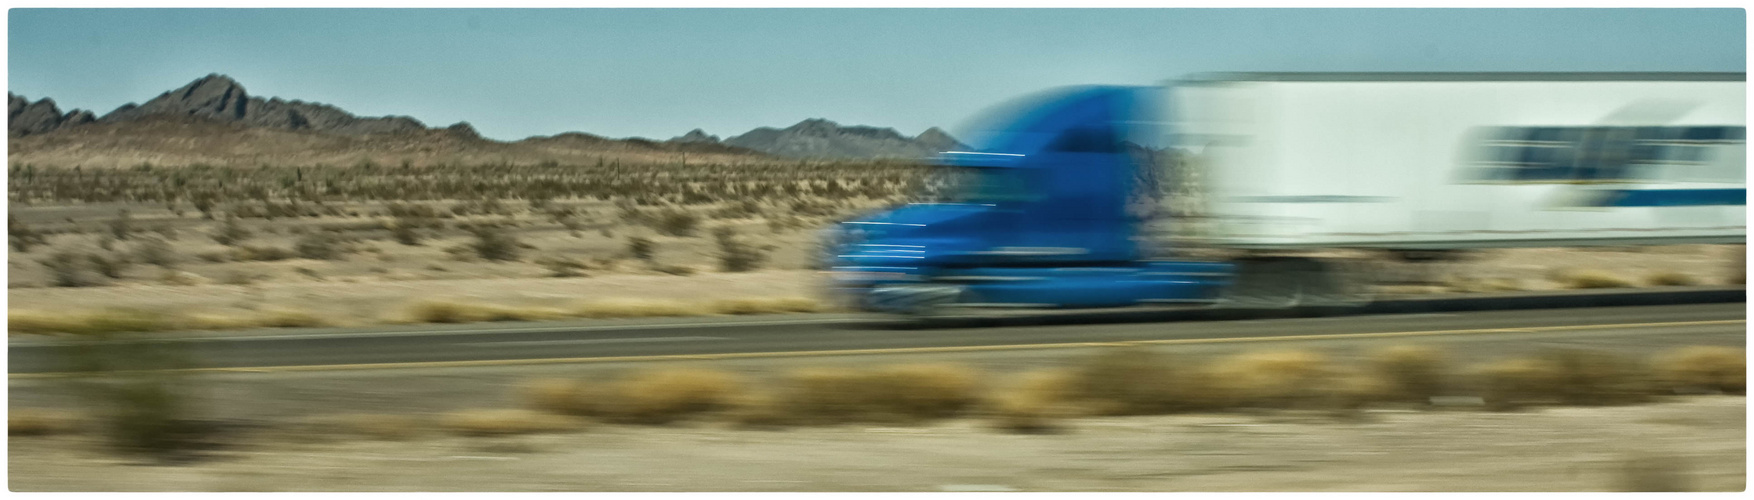 Fahrt durch die Mojave Wüste